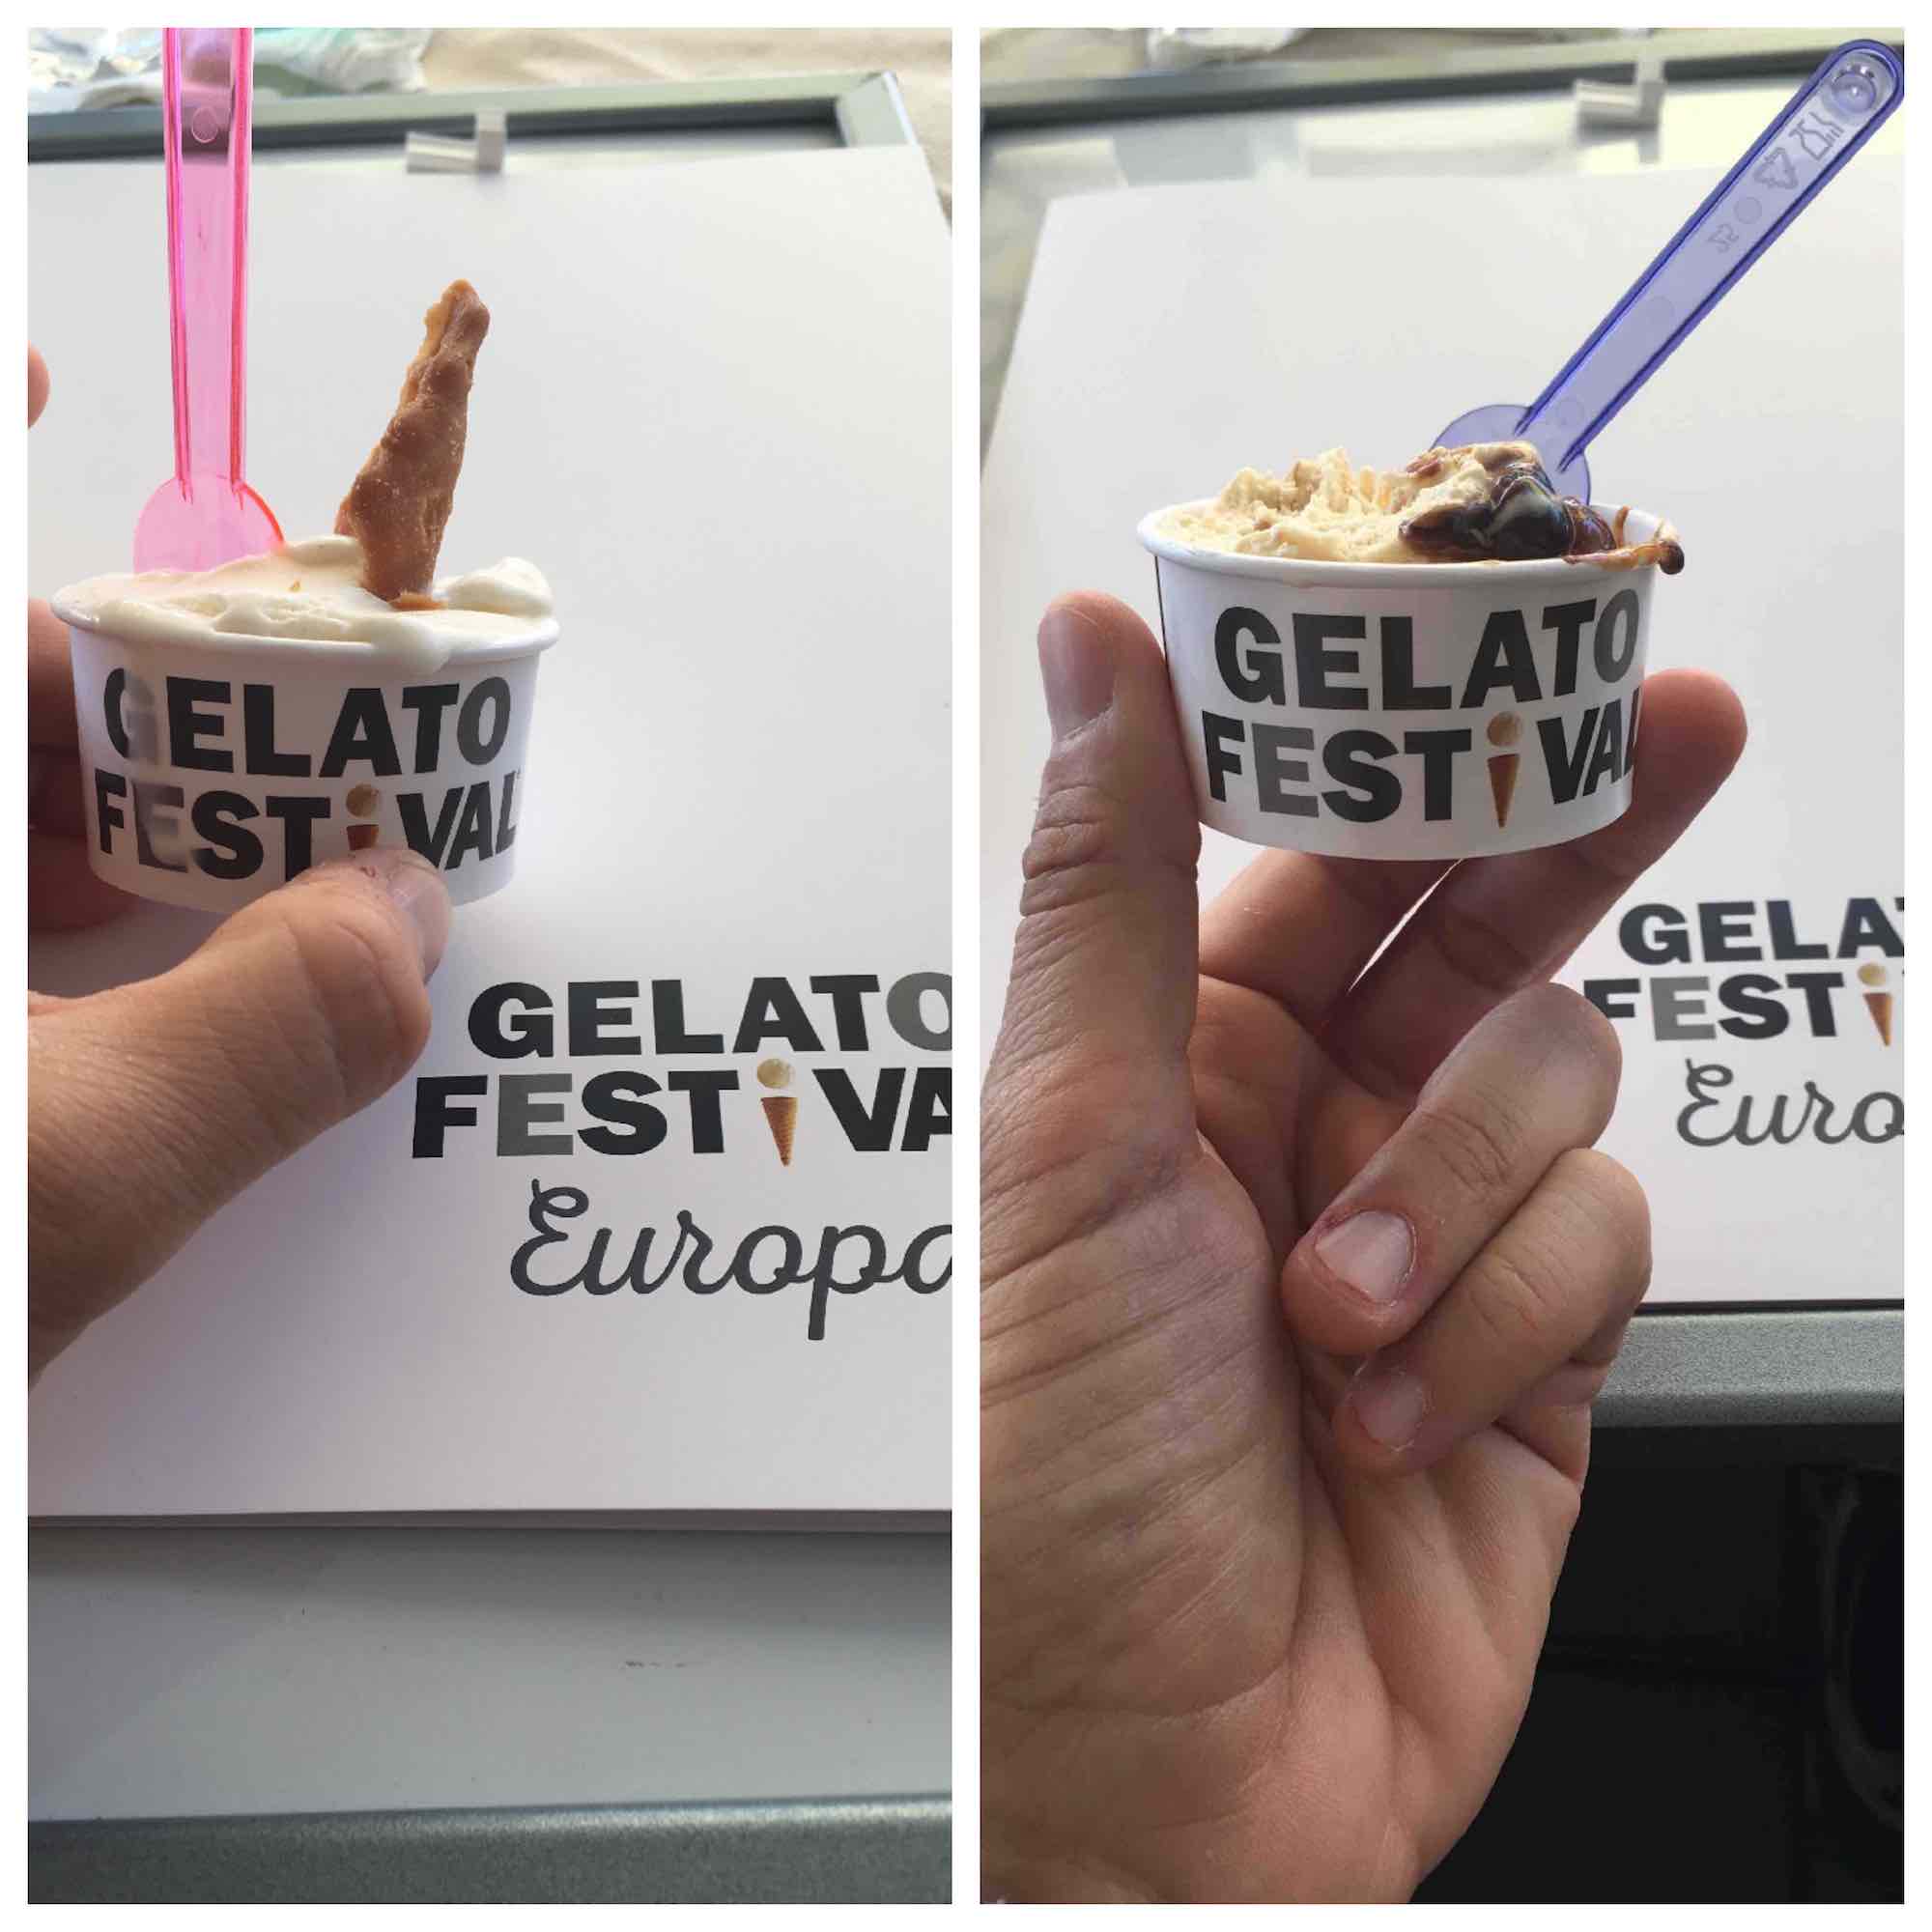 Nella giuria di esperti del Gelato Festival 2018 che decreterà il campione mondiale di gelateria, quest'anno è arrivata anche TuscanyPeople